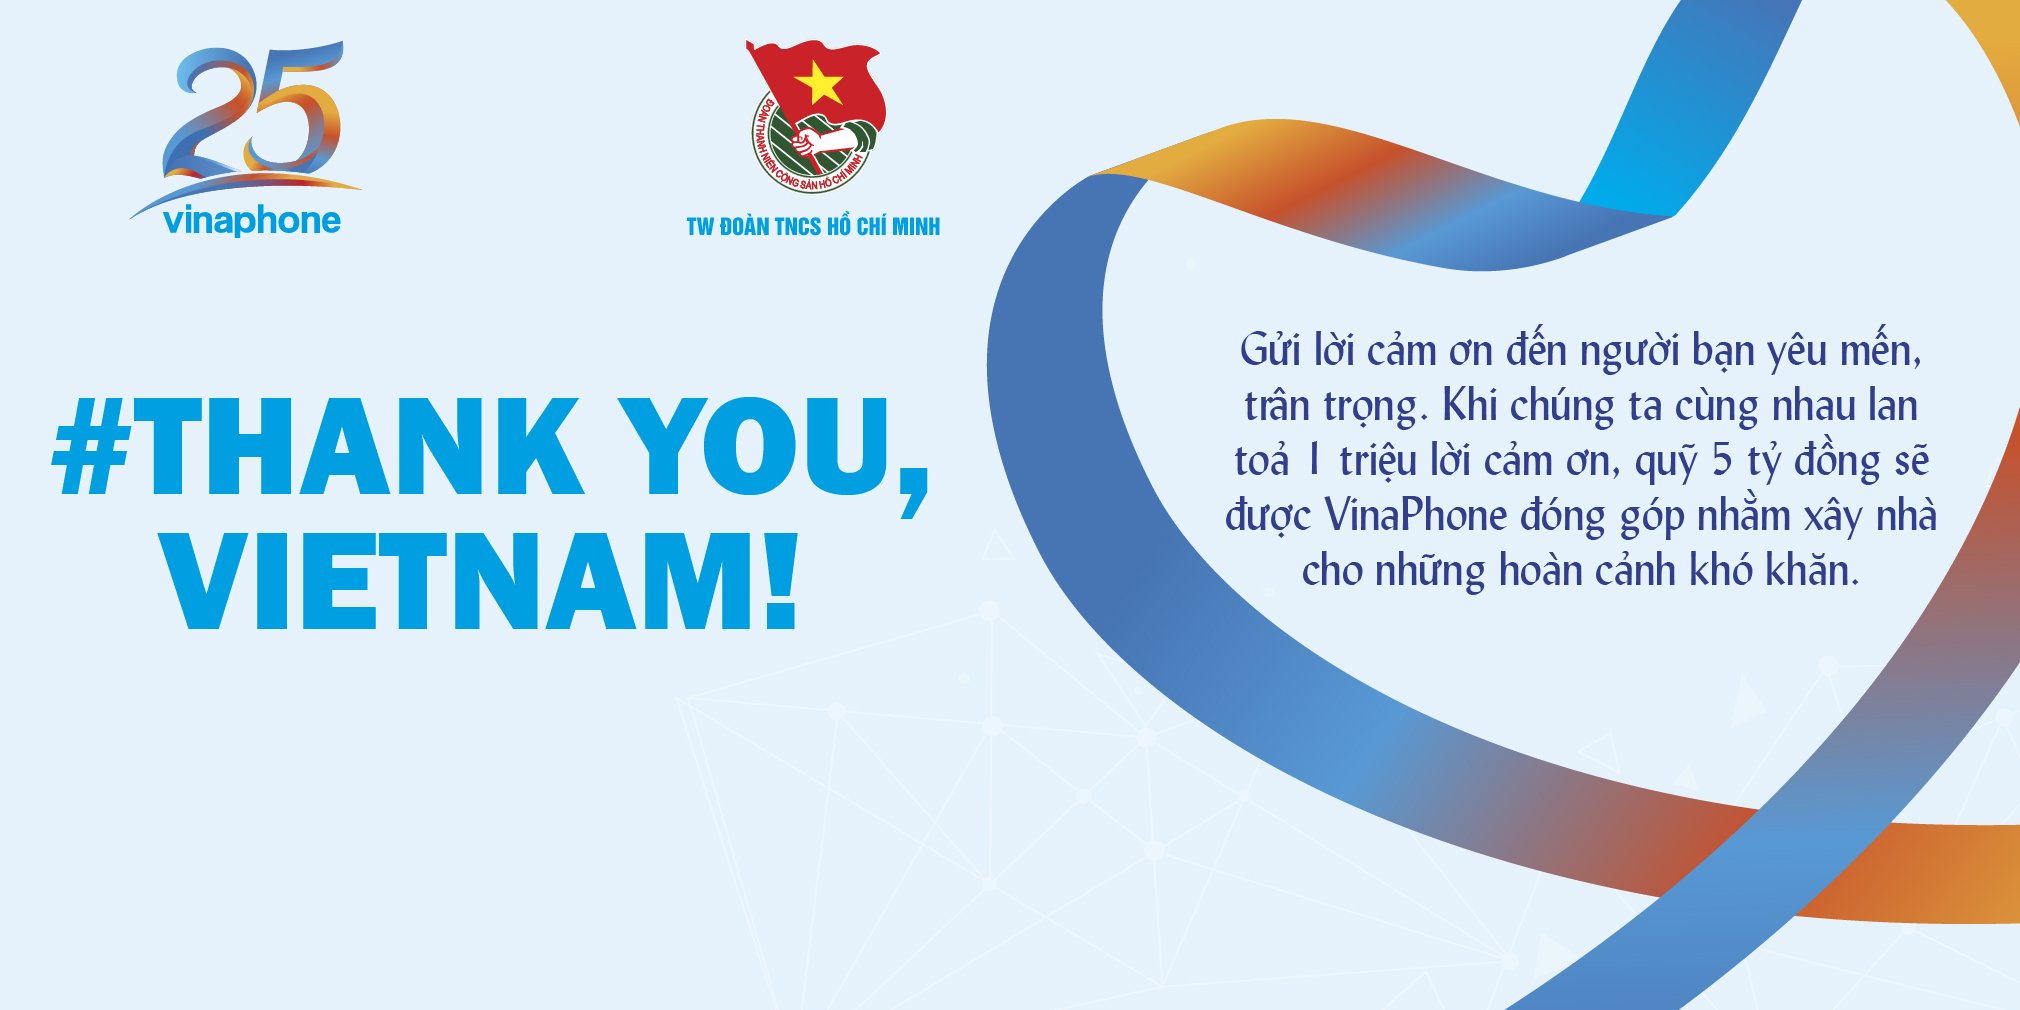 Thankyou,VietNam – Hành trình 2 tháng lan tỏa thông điệp cùng nhau nói lời cảm ơn